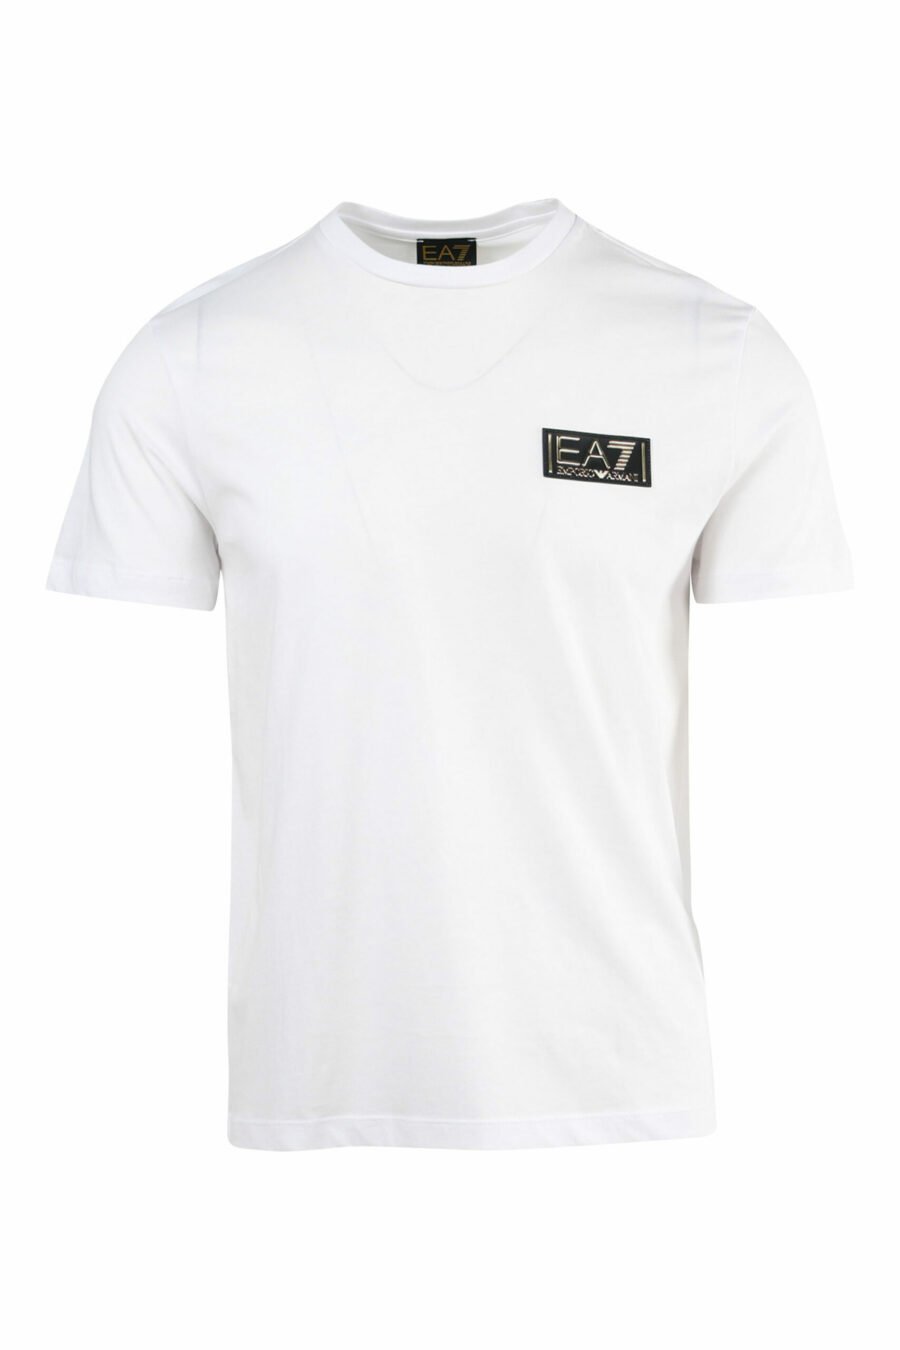 T-shirt blanc avec mini-logo doré "lux identity" - 8057767515720 1 à l'échelle